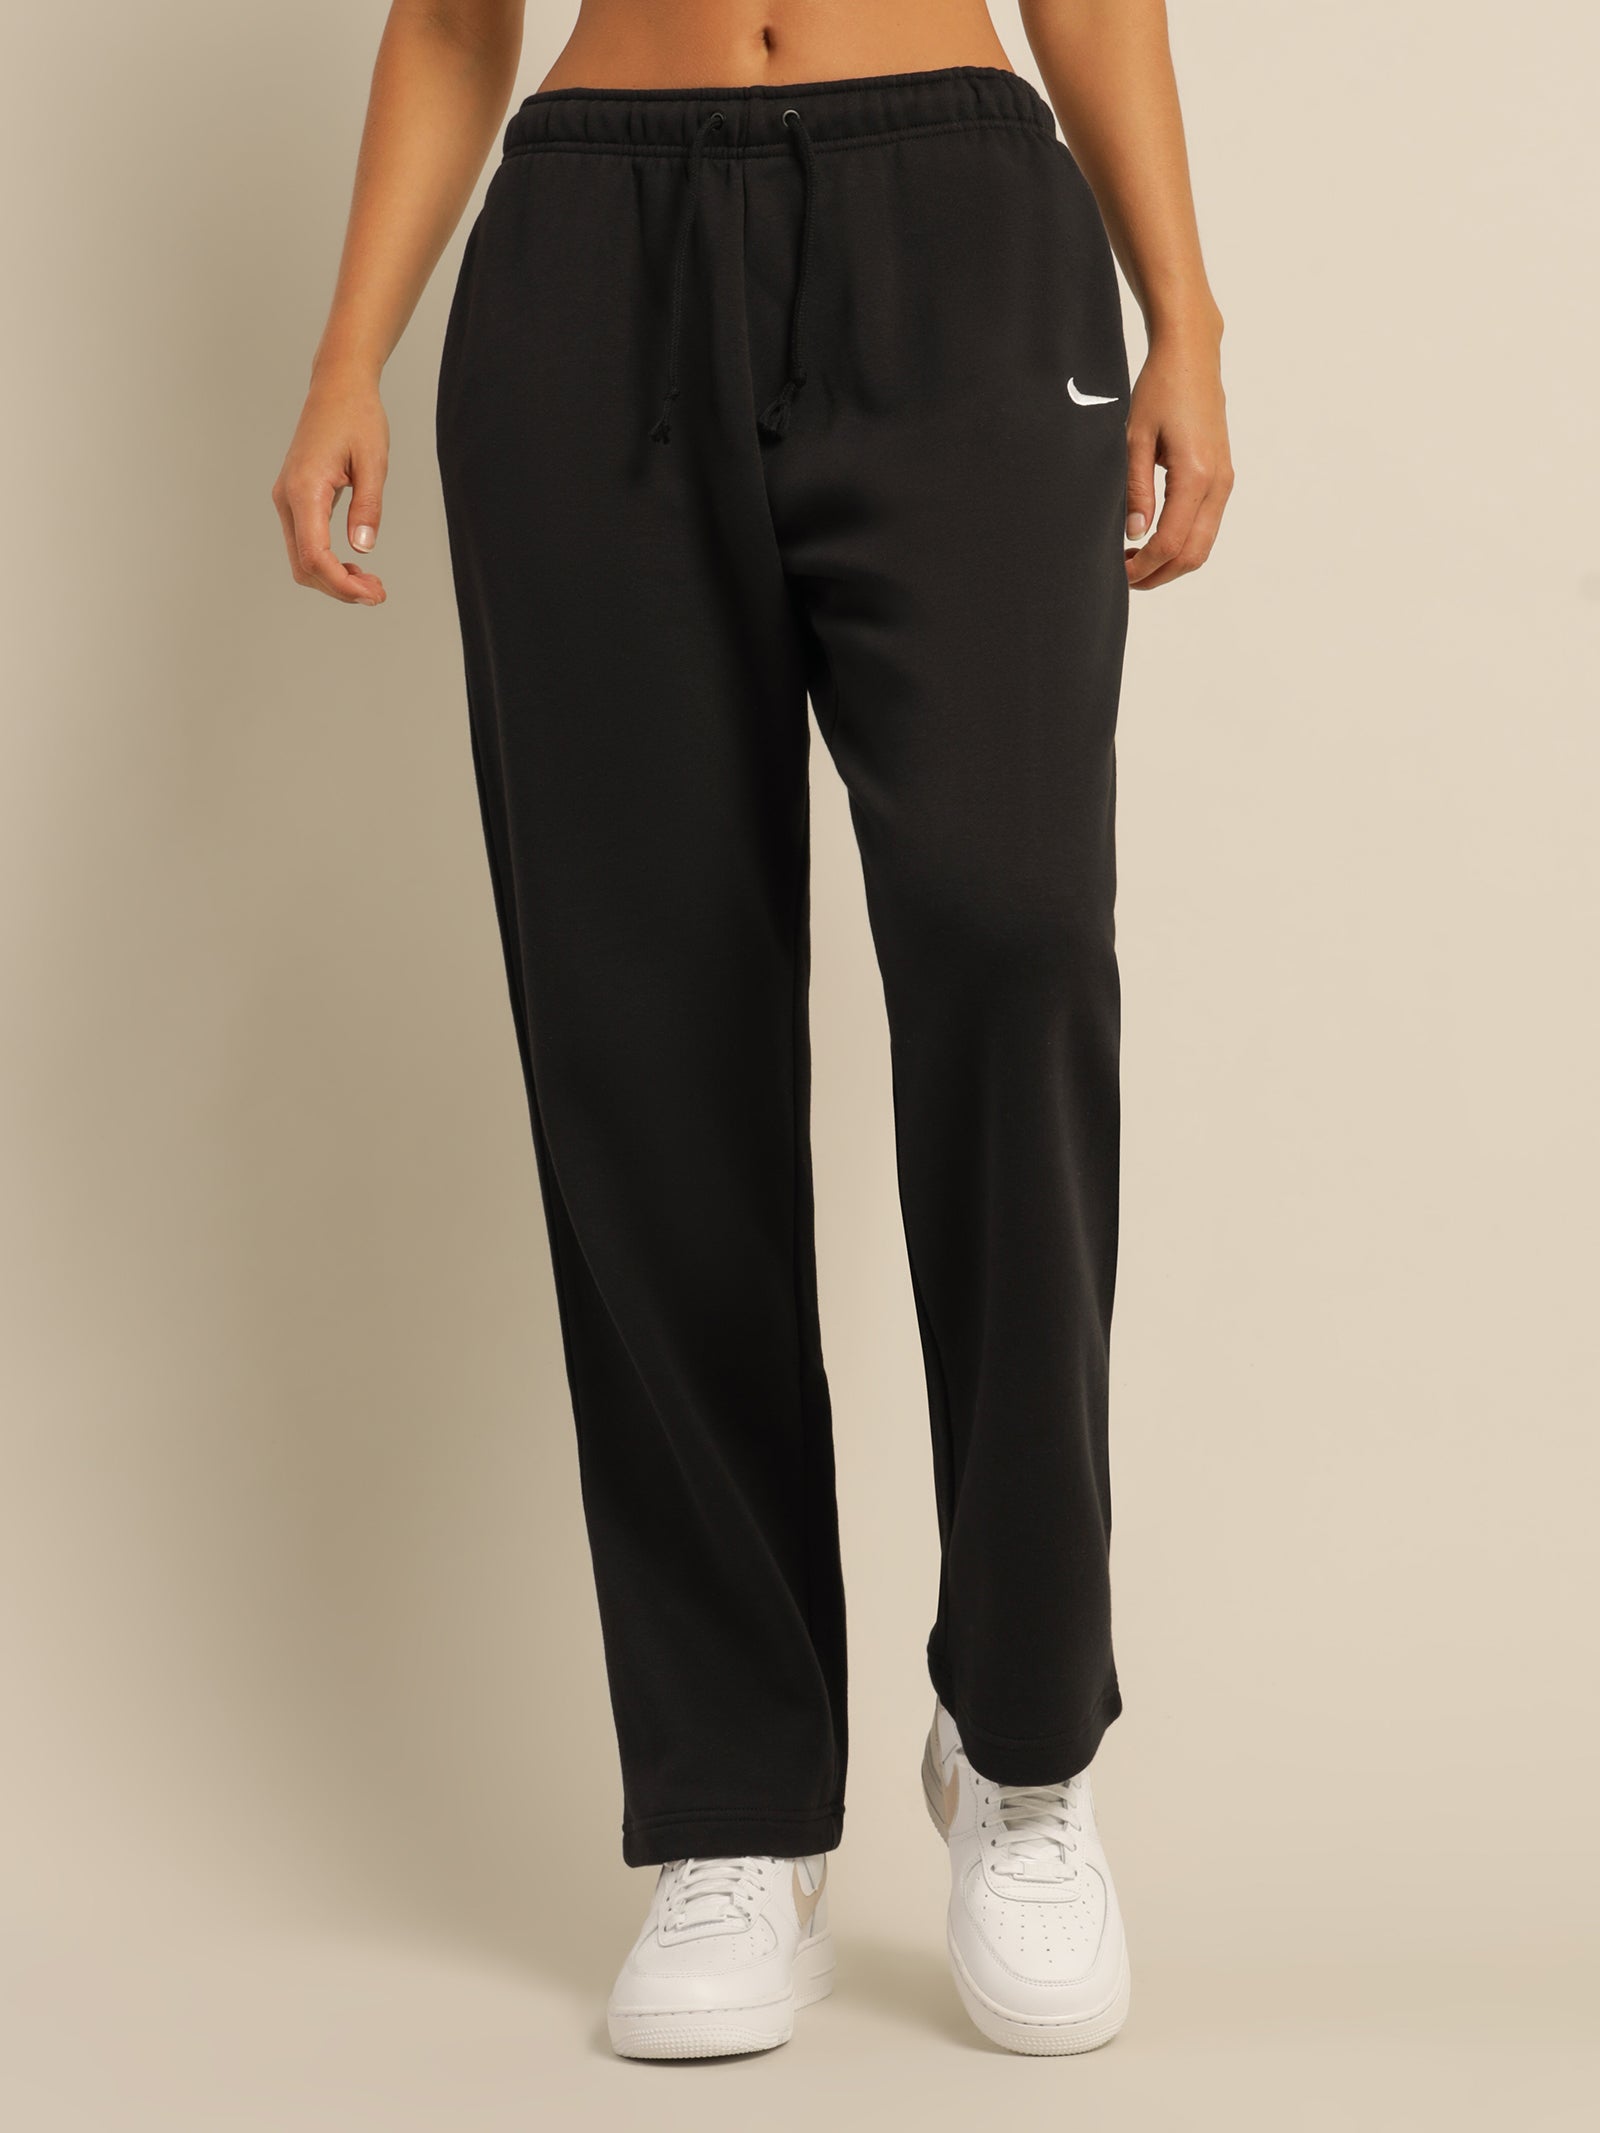 NEW Nike Women's Sportswear Essential Collection Fleece Pants (BV4089 010)  Black